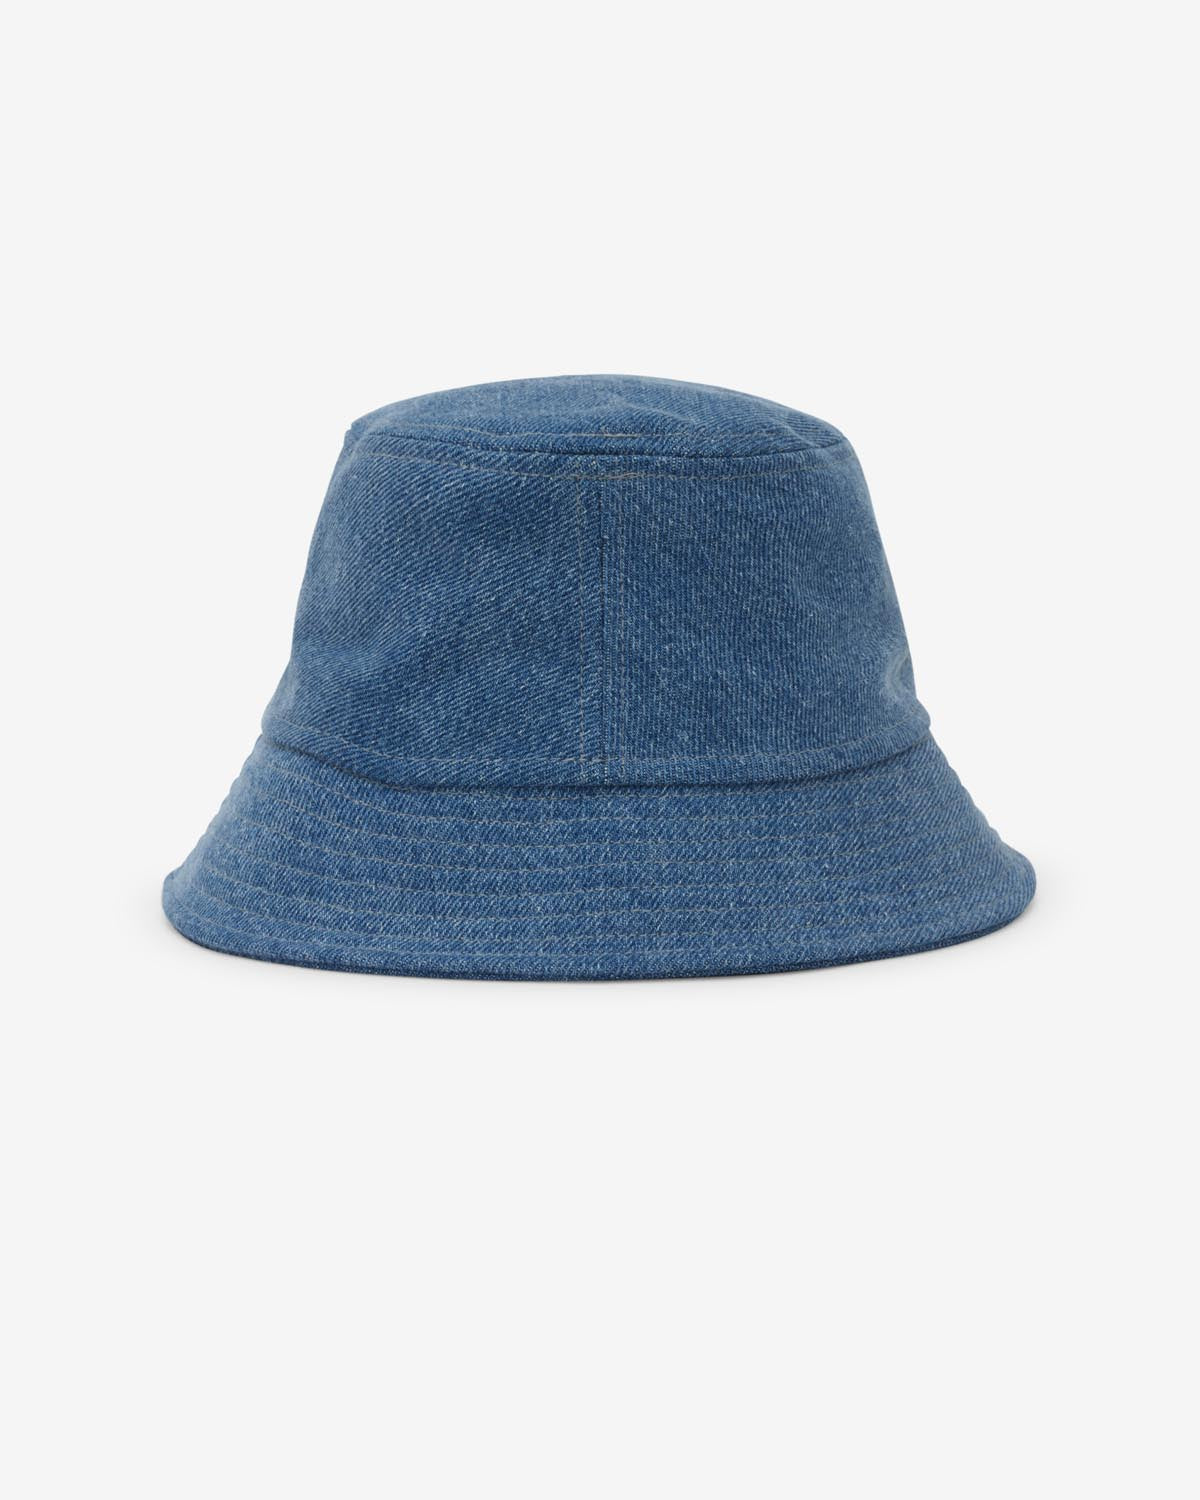 Sombrero haley Woman Azul claro 2